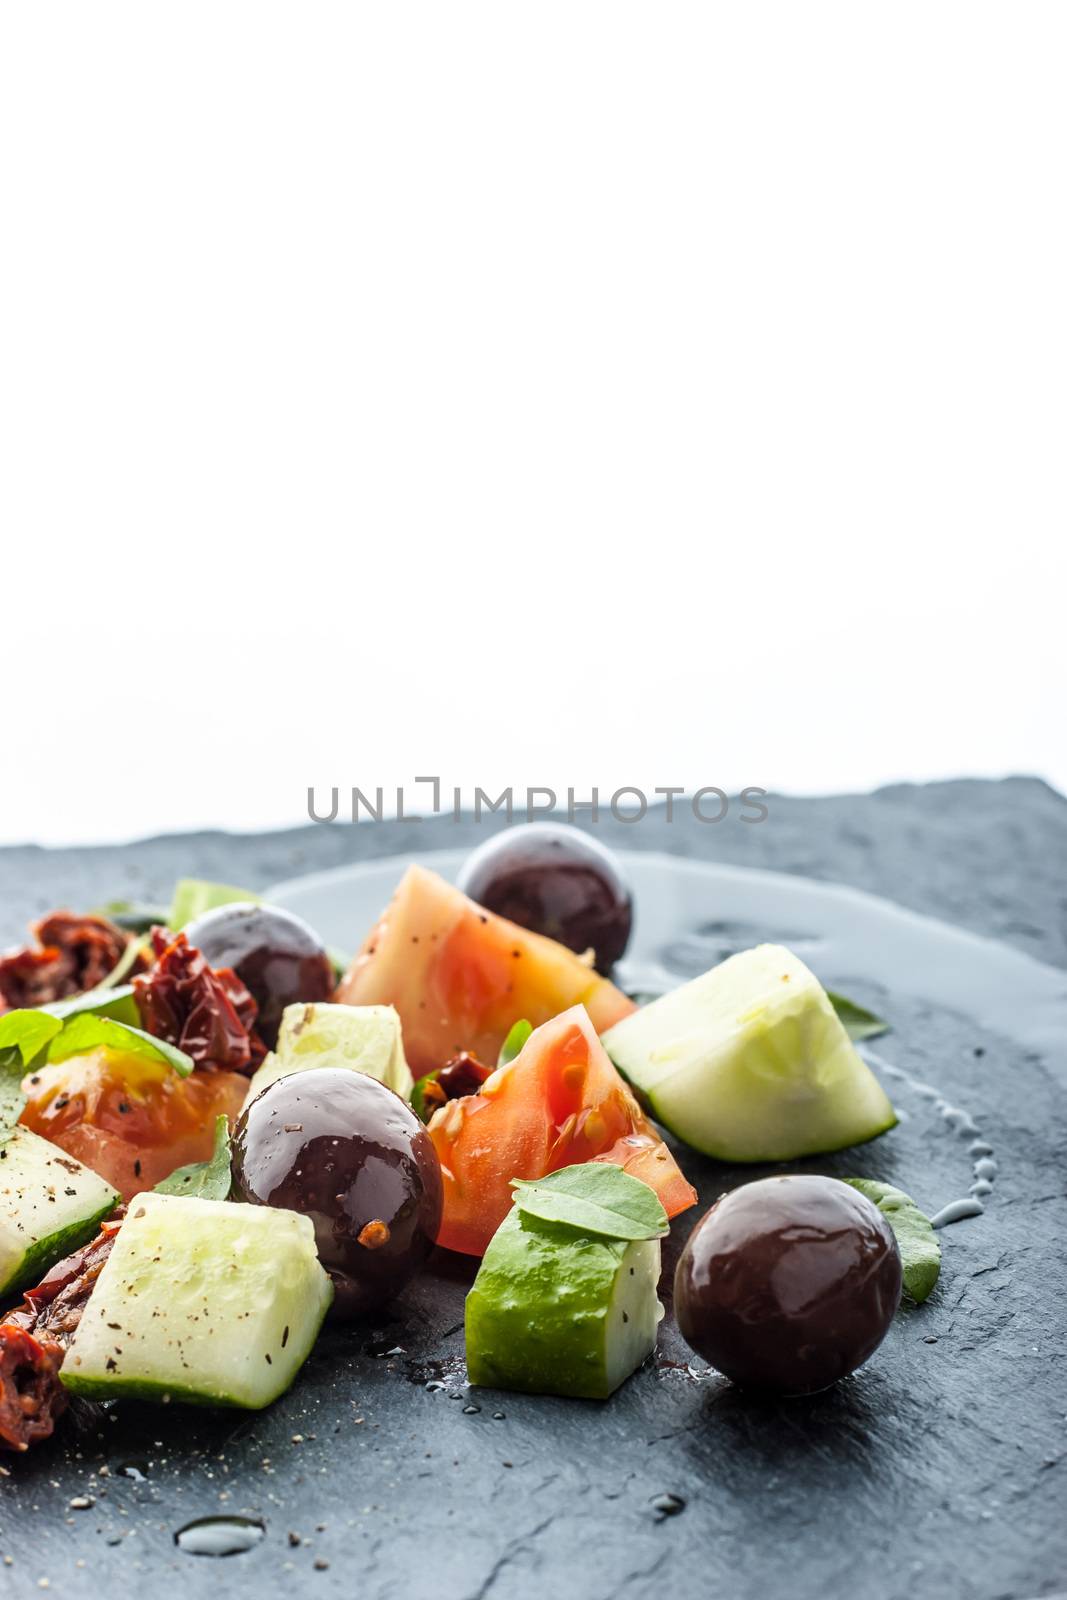 Vegetable salad on the black stone table